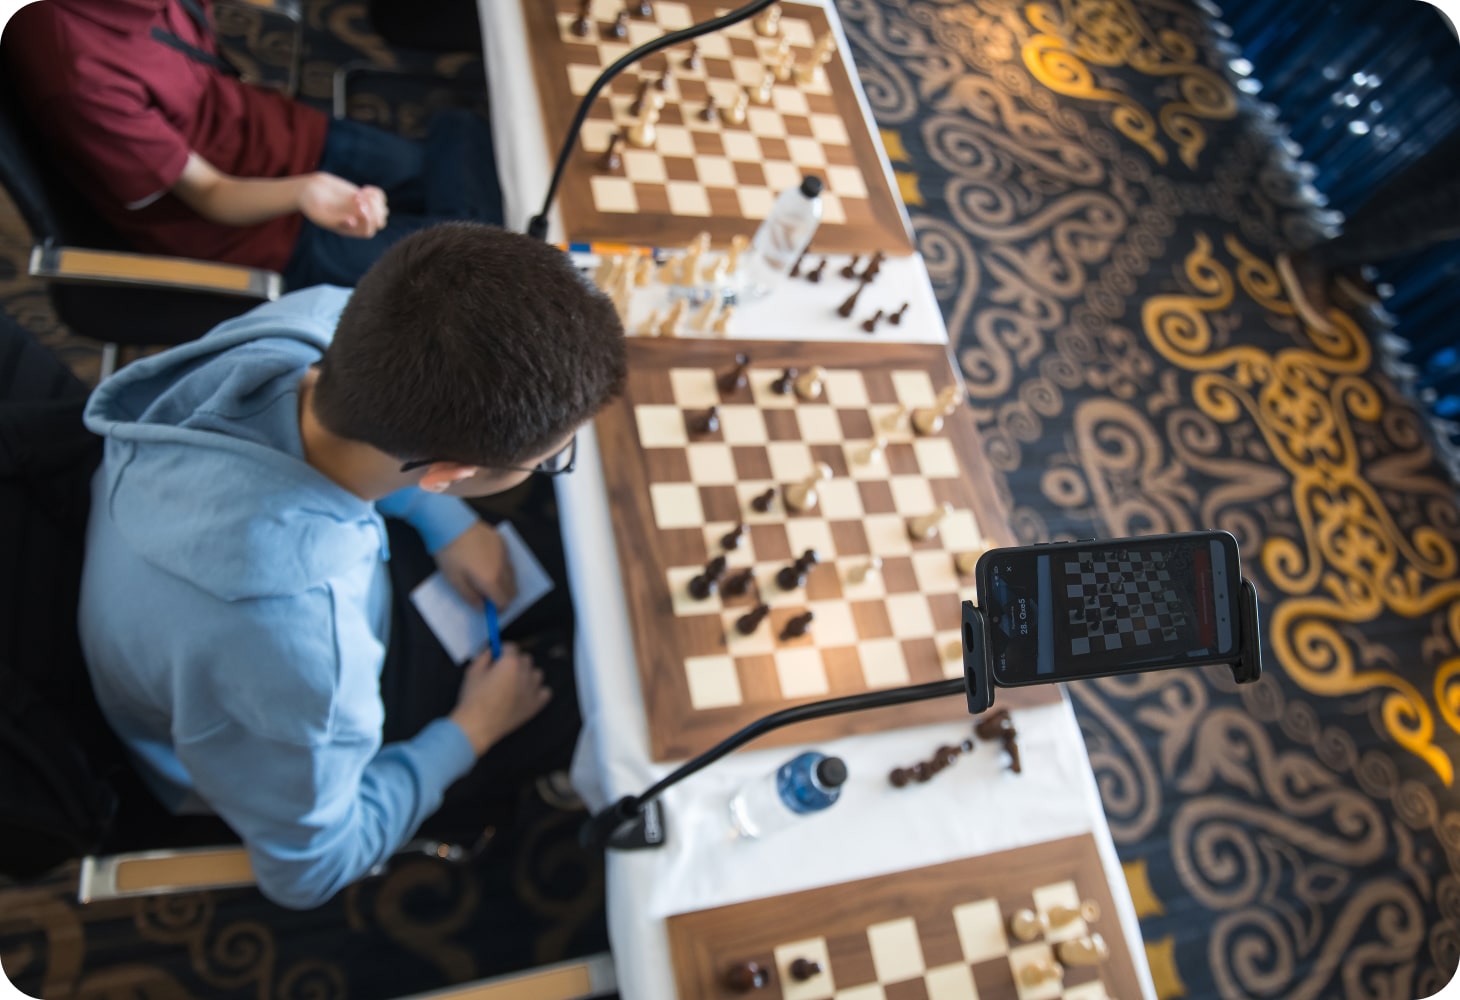 GM Daniil Dubov ladies and gentlemen. #chess #chessvideos #chessmoves  #chessgrandmaster #chessgame